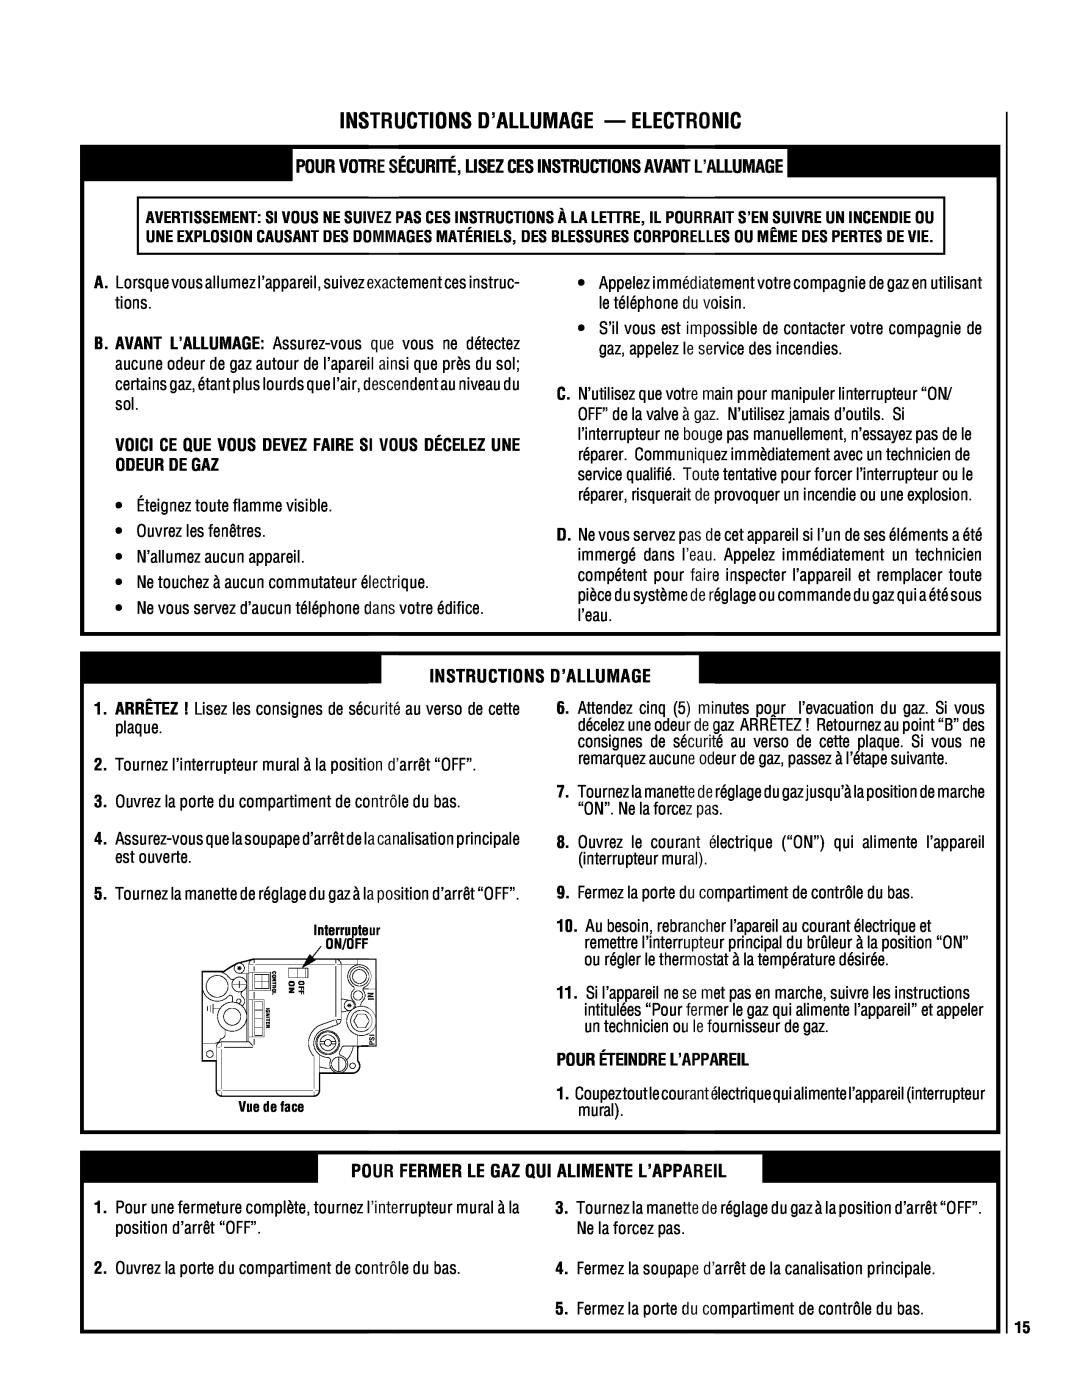 Superior DR500 manual Instructions D’Allumage - Electronic, Pour Éteindre L’Appareil 